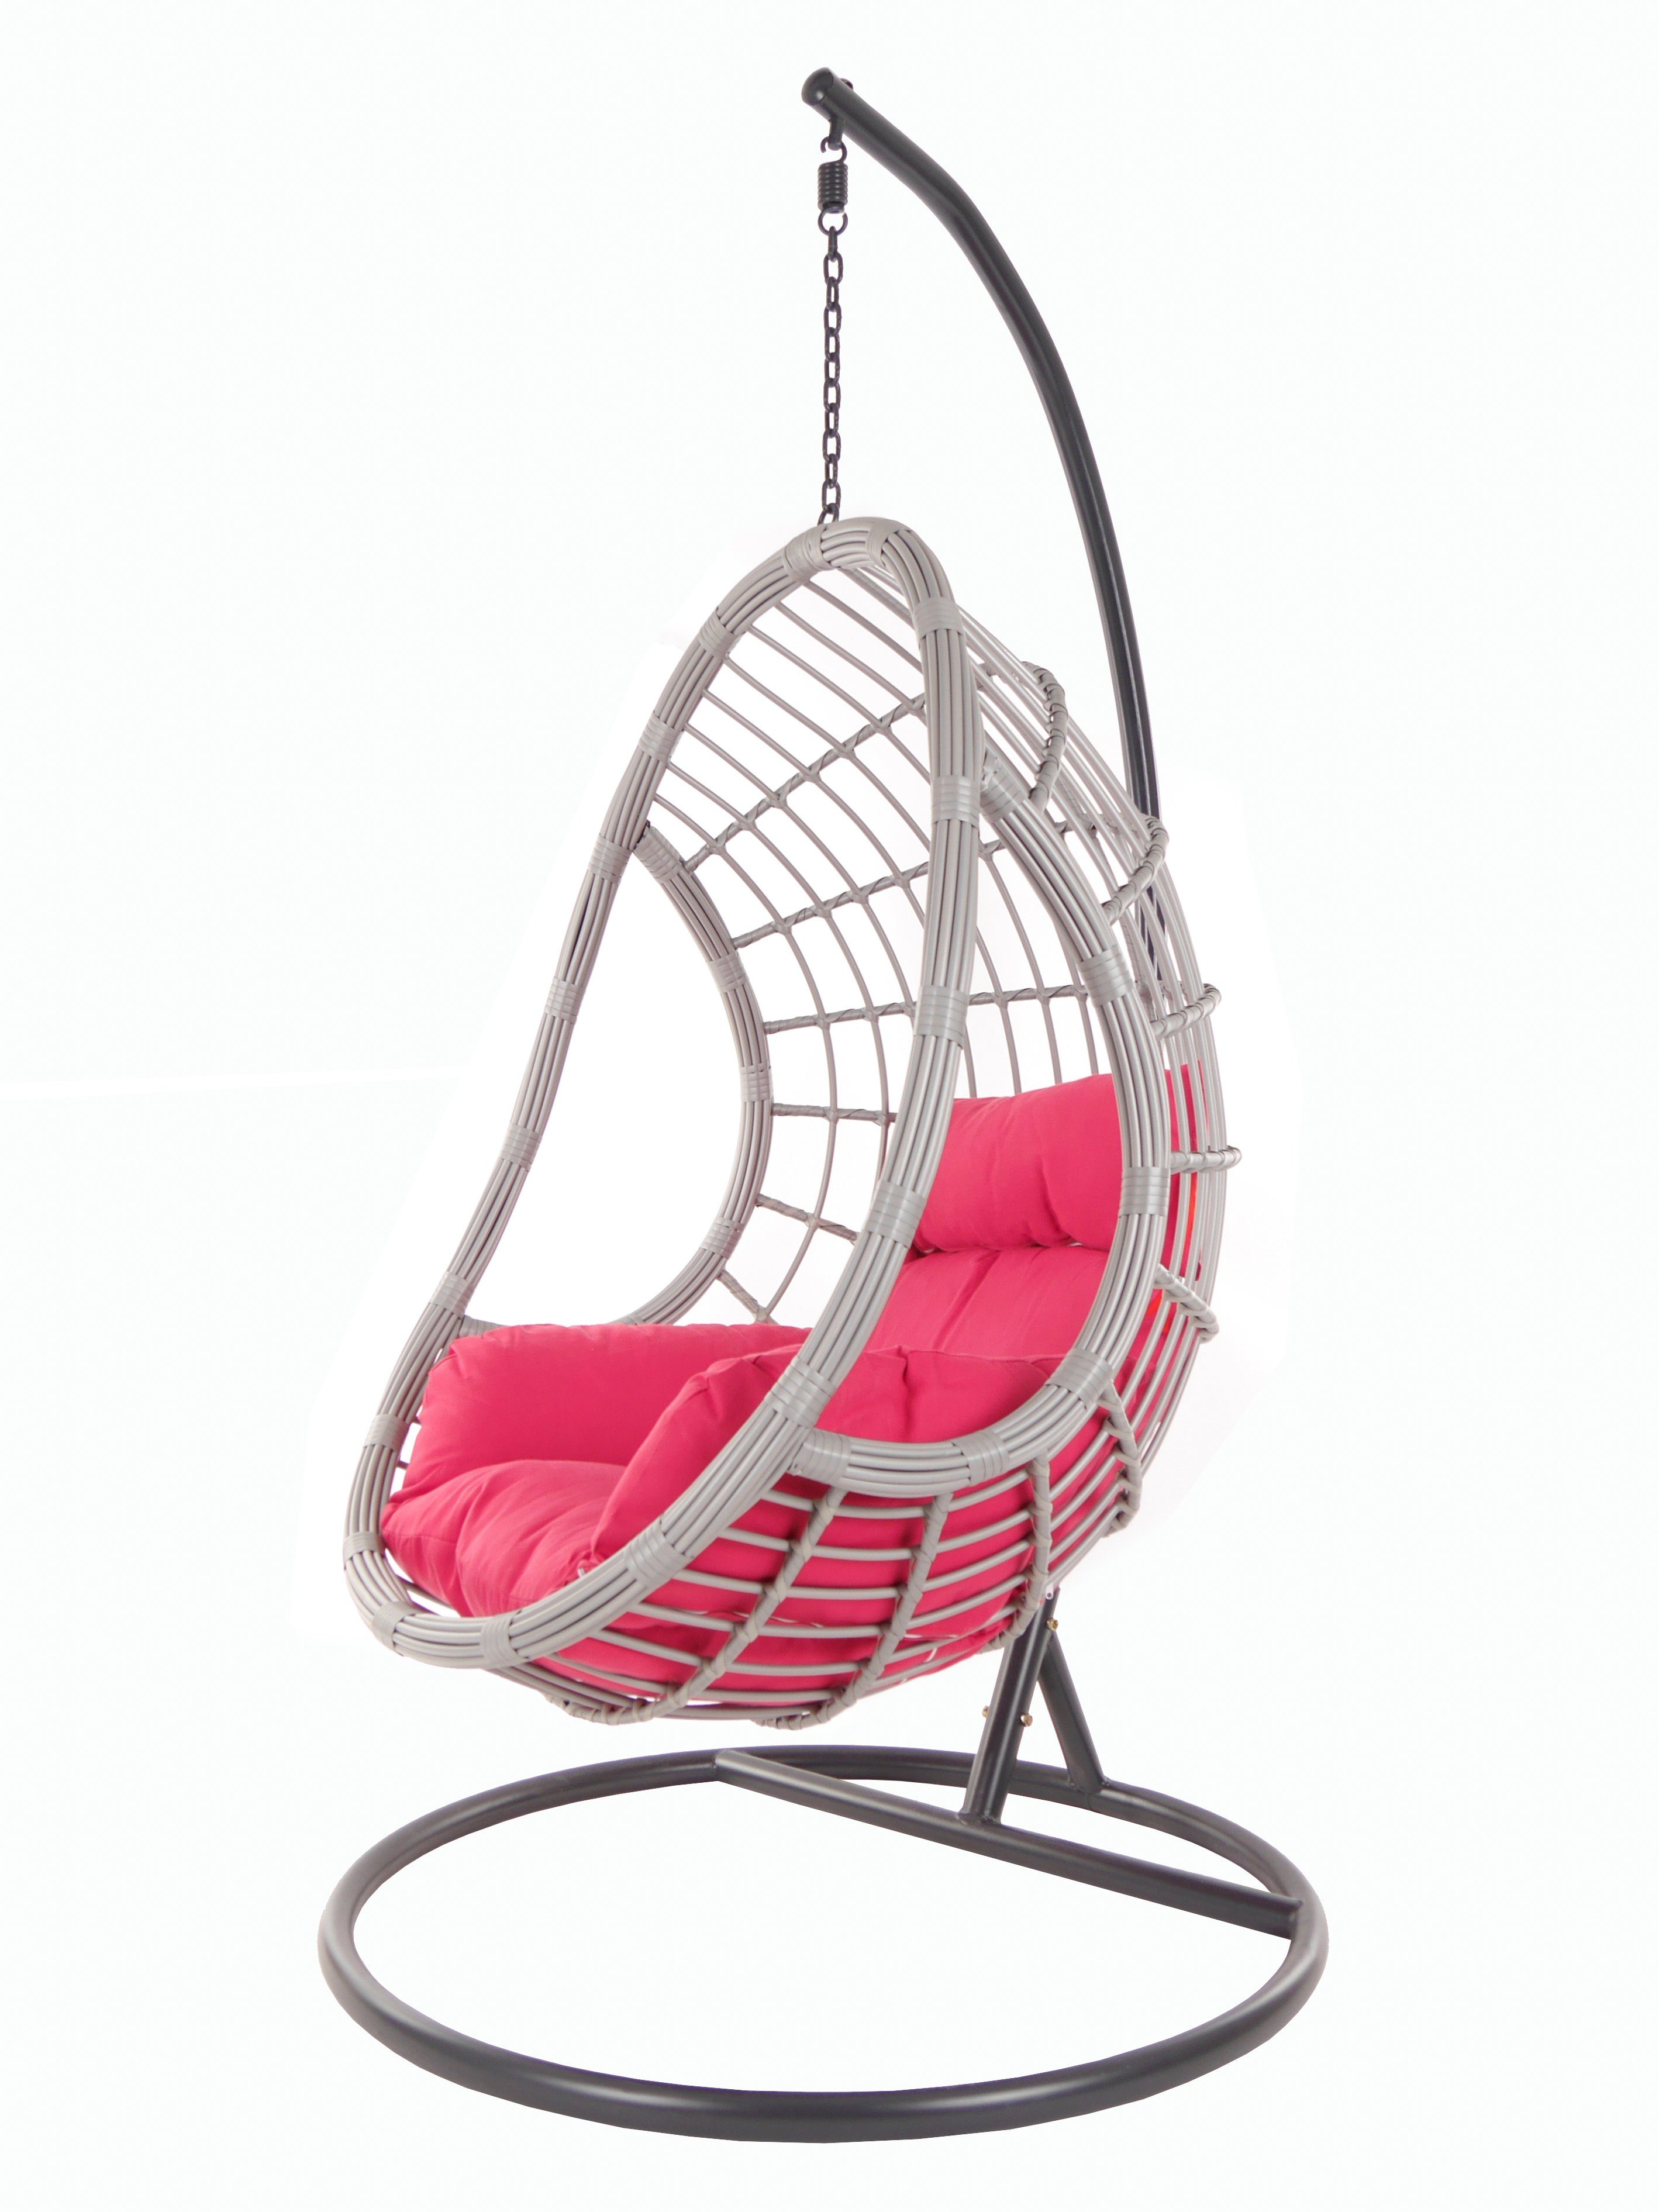 (3333 KIDEO PALMANOVA Hängesessel Loungemöbel Chair, hot lightgrey, und pink) mit pink Swing Kissen, Schwebesessel Gestell